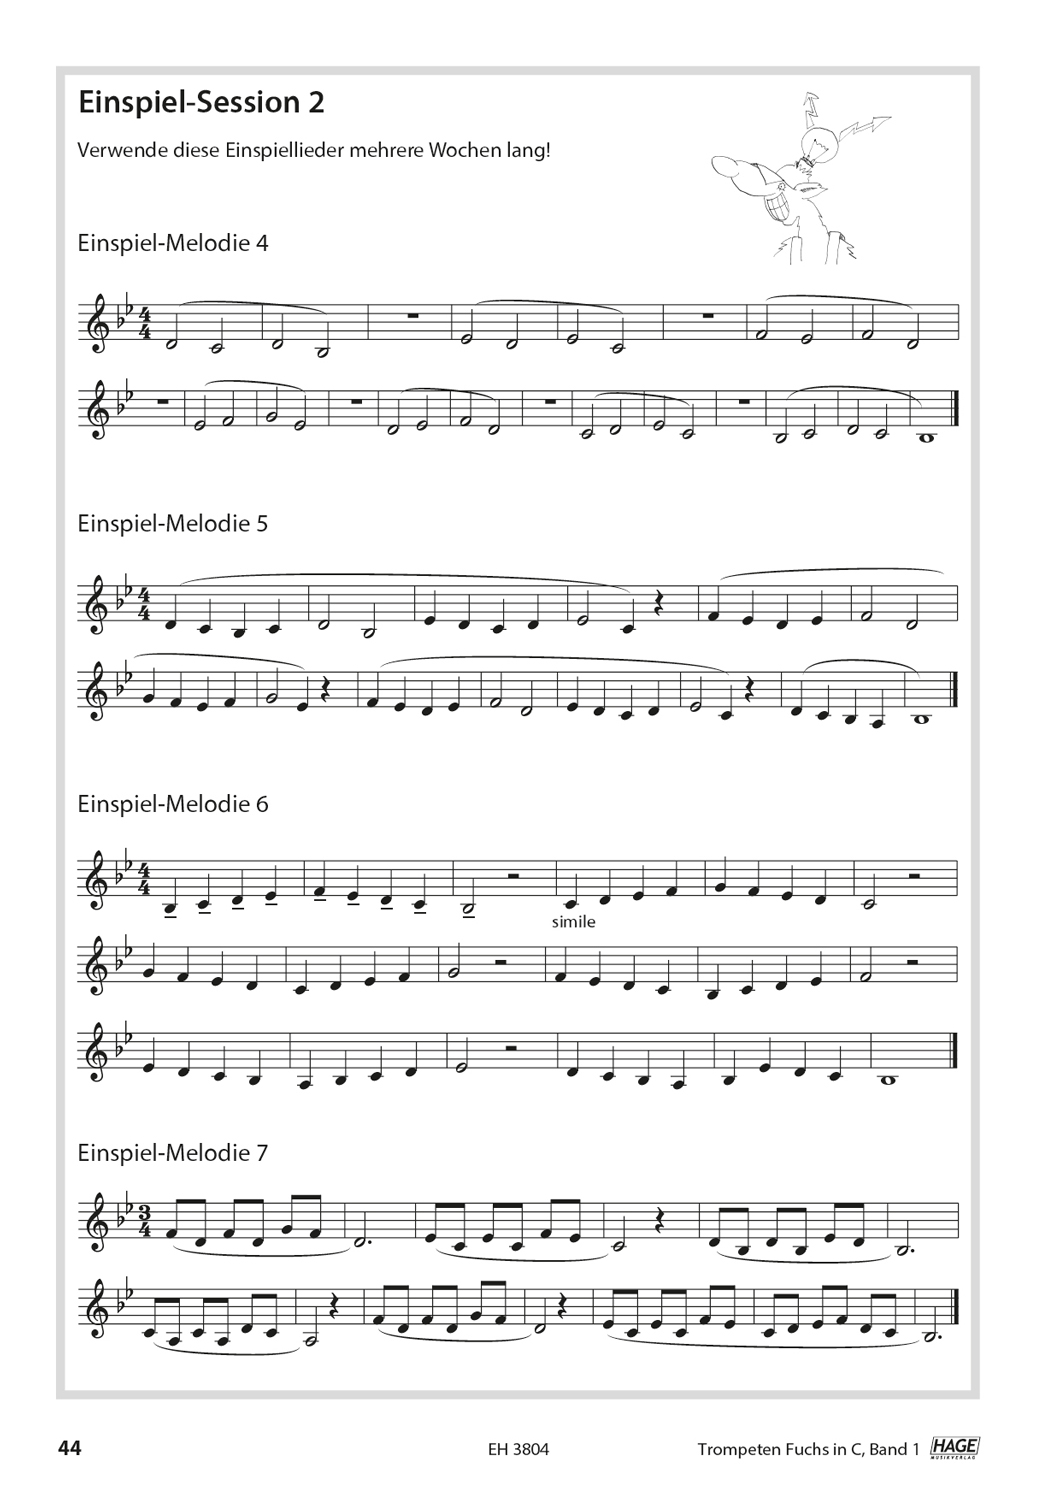 Trompeten Fuchs Band 1 in C für Posaunenchor (mit CD) Seiten 7